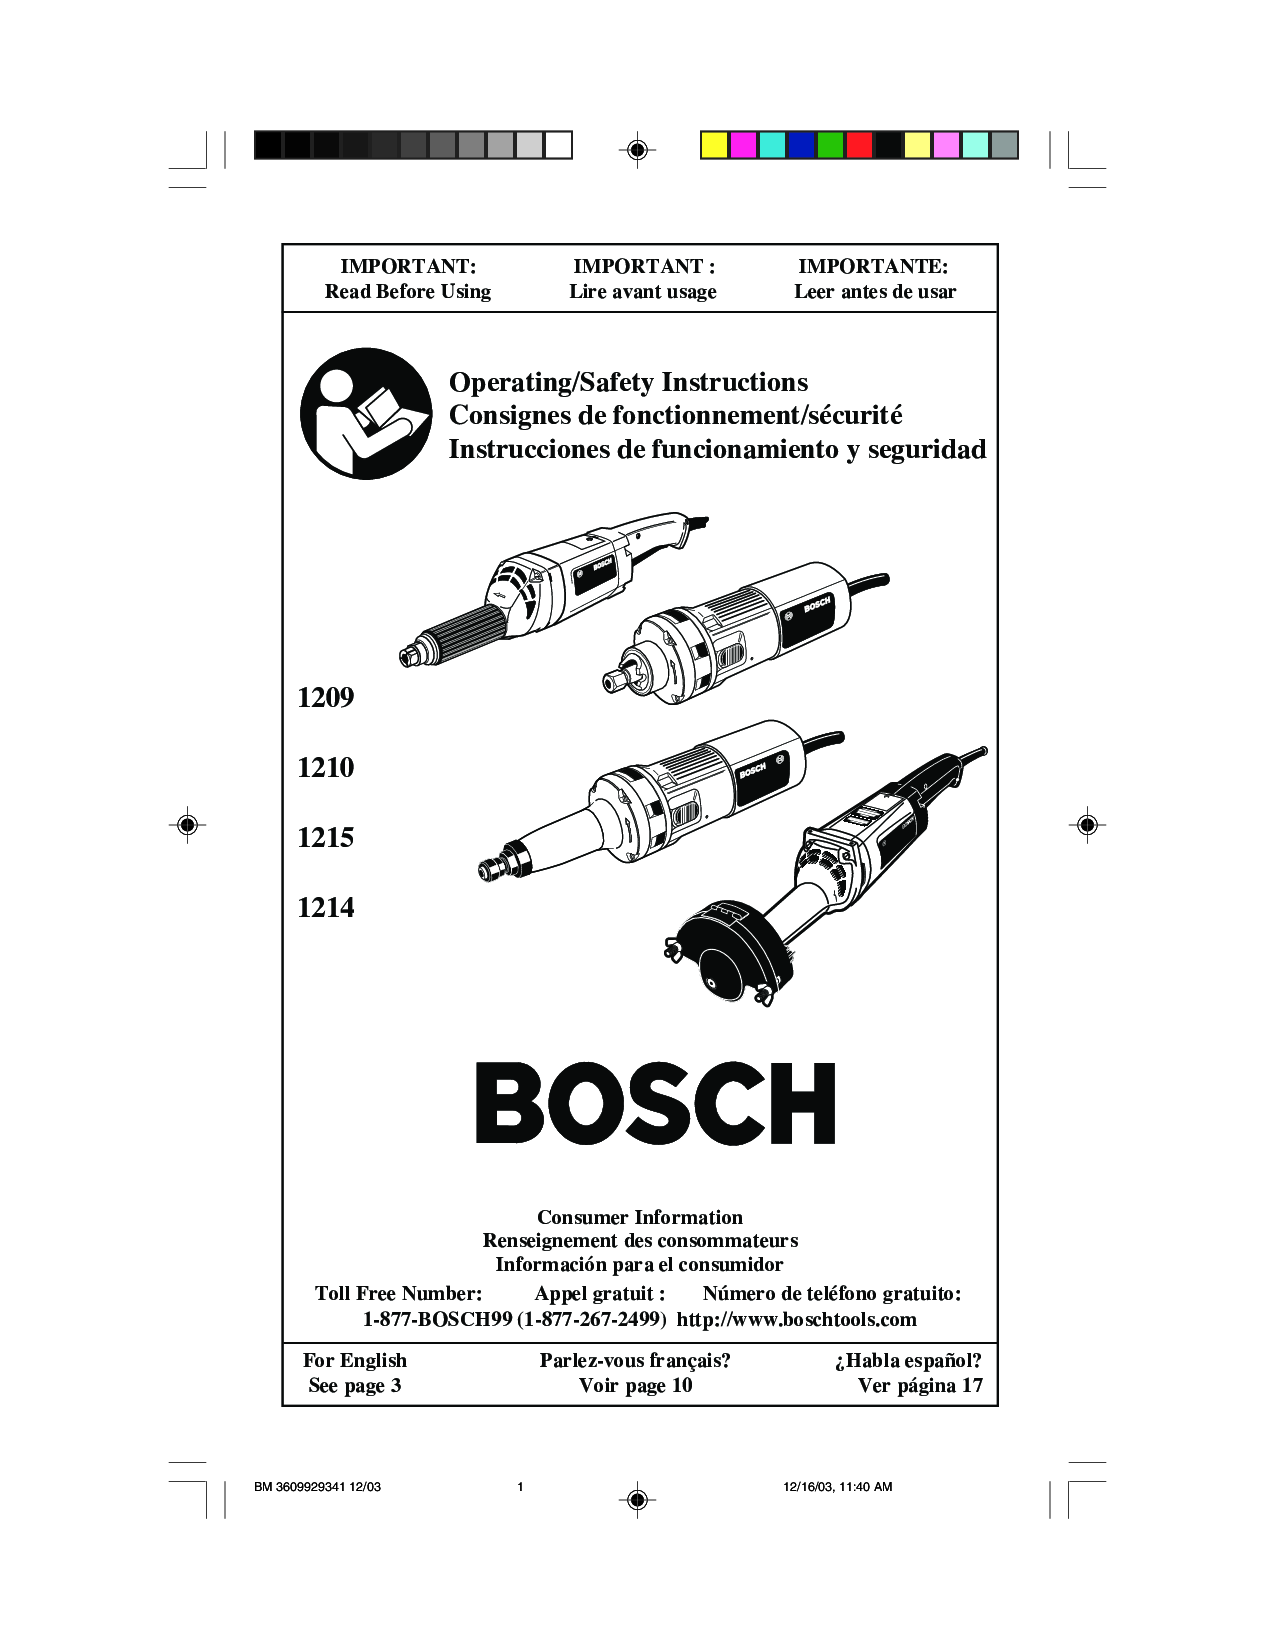 Bosch 1210, 1215, 1214, 1209 User Manual